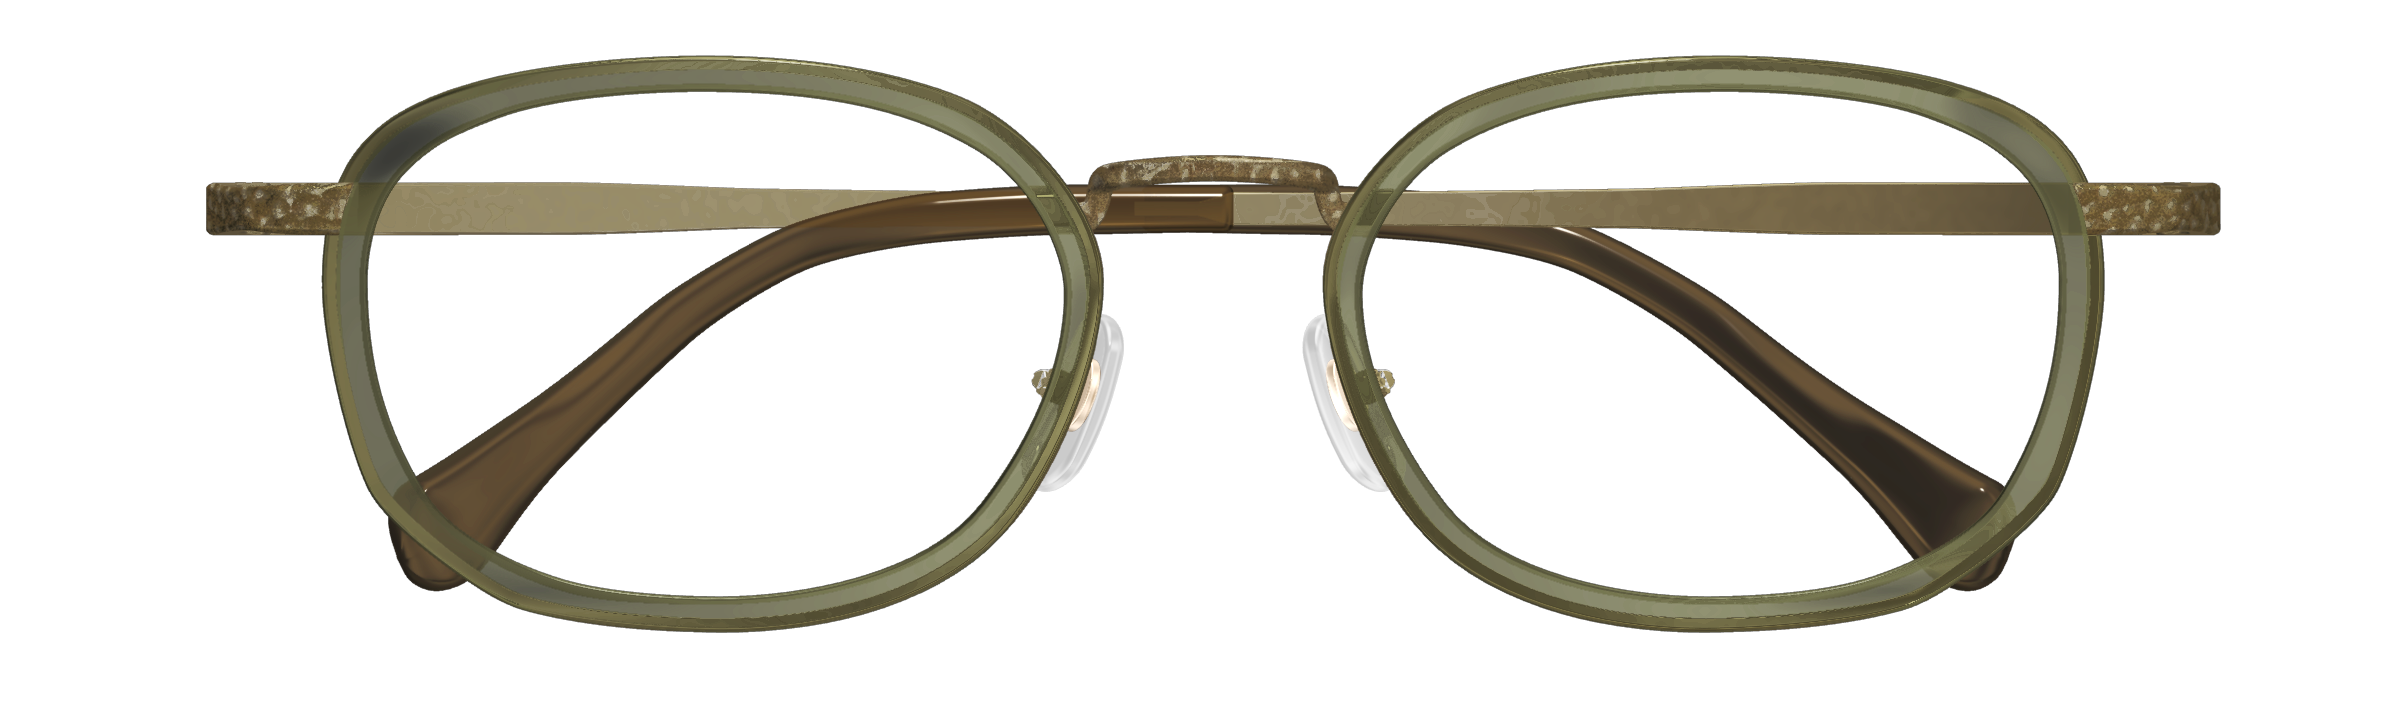 Frontosa 日本製 SAV-fu サブフ 眼鏡 メガネ フレーム SA6013-S メンズ 鯖江産 - めがね、コンタクト